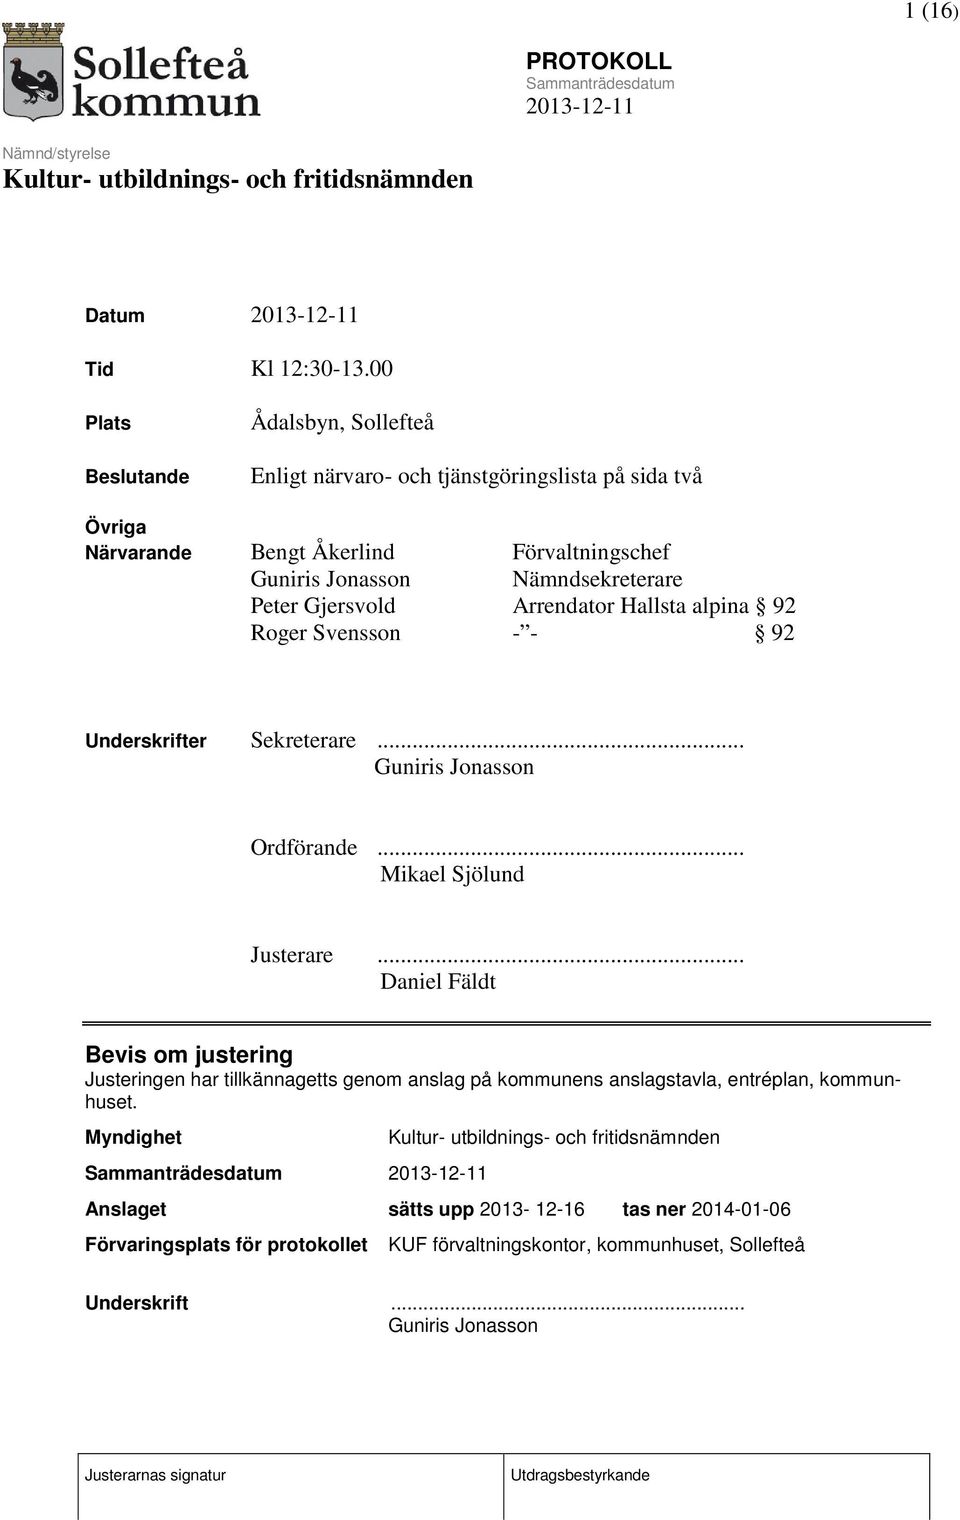 Nämndsekreterare Peter Gjersvold Arrendator Hallsta alpina 92 Roger Svensson - - 92 Underskrifter Sekreterare... Guniris Jonasson Ordförande.